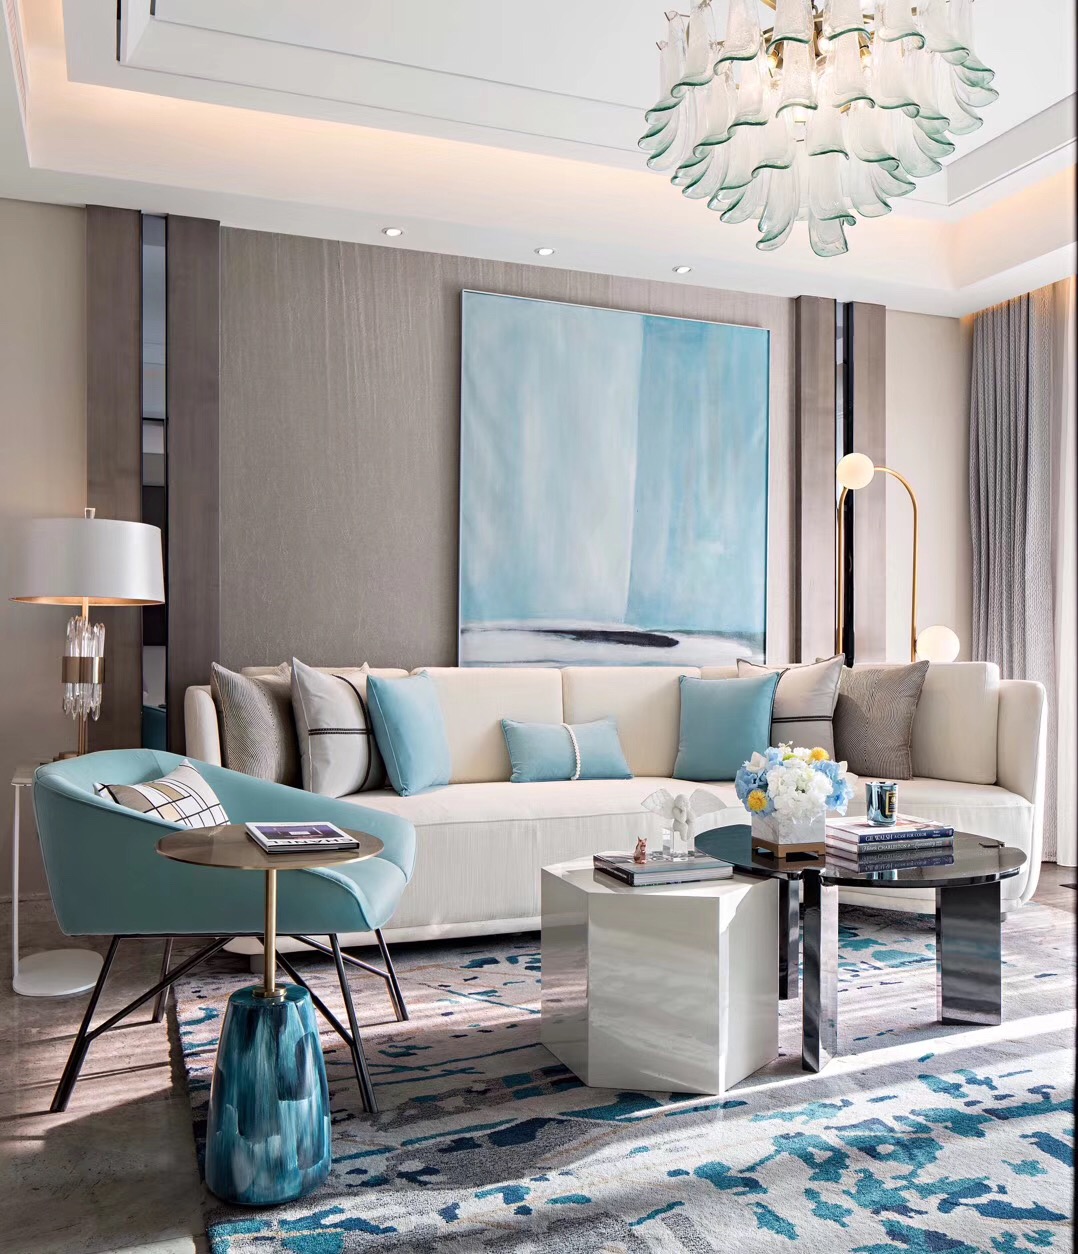 硬朗质感的木饰背景搭配米白色布艺沙发，共同组成了客厅的第一感官。